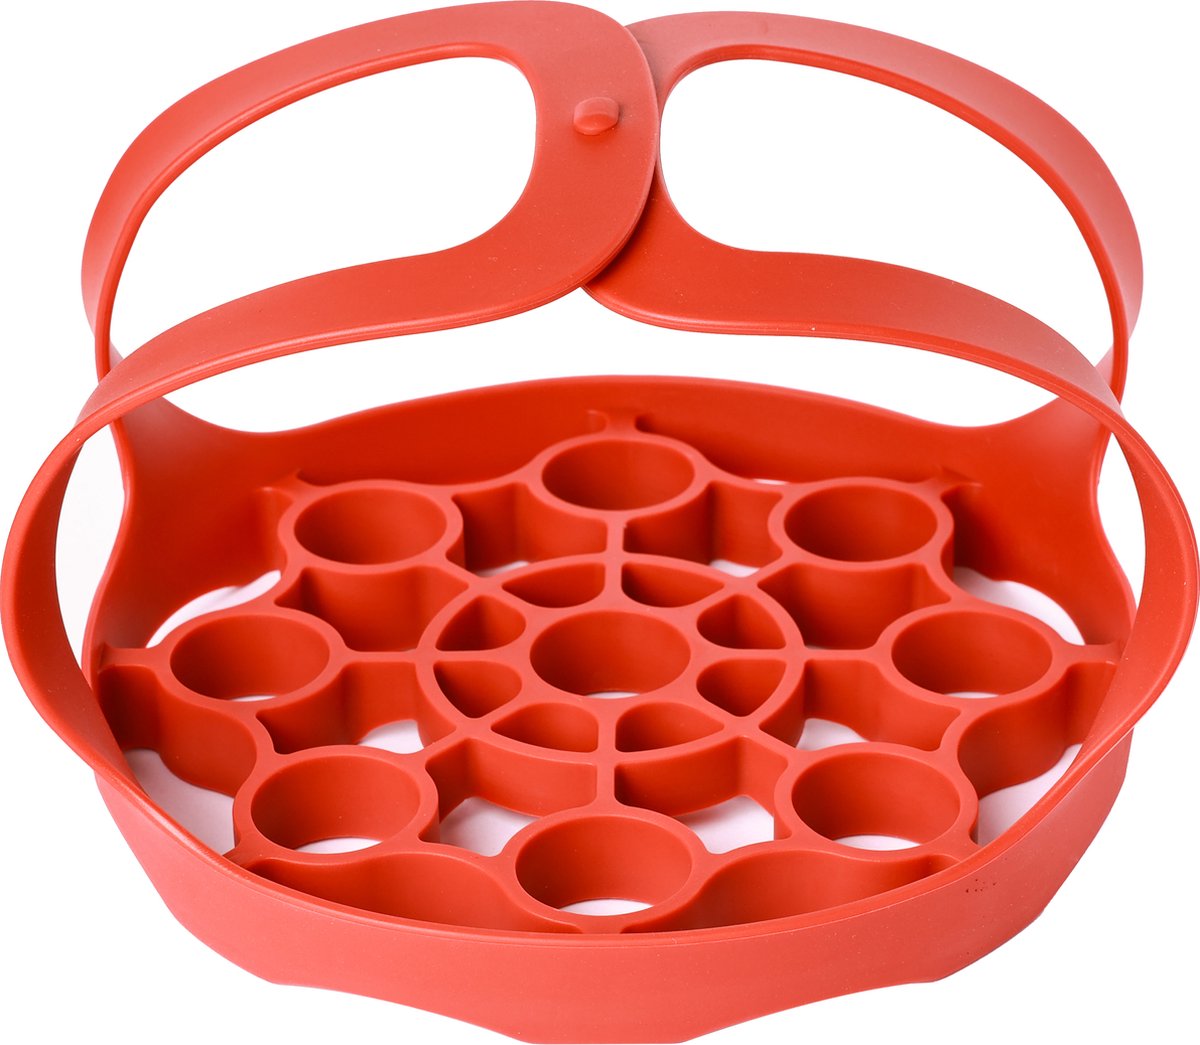 Ziva Instant Pot rubber bakwaren sling voor Instant Pot 6 Qt / 8 Qt, compatibel met andere merken multifunctionele kokers - Hittebestendig - Handig voor Eieren - Ook voor Ninja Multicooker - Makkelijk schoon te maken - Vaatwasserbestendig - Stoommand - Ziva